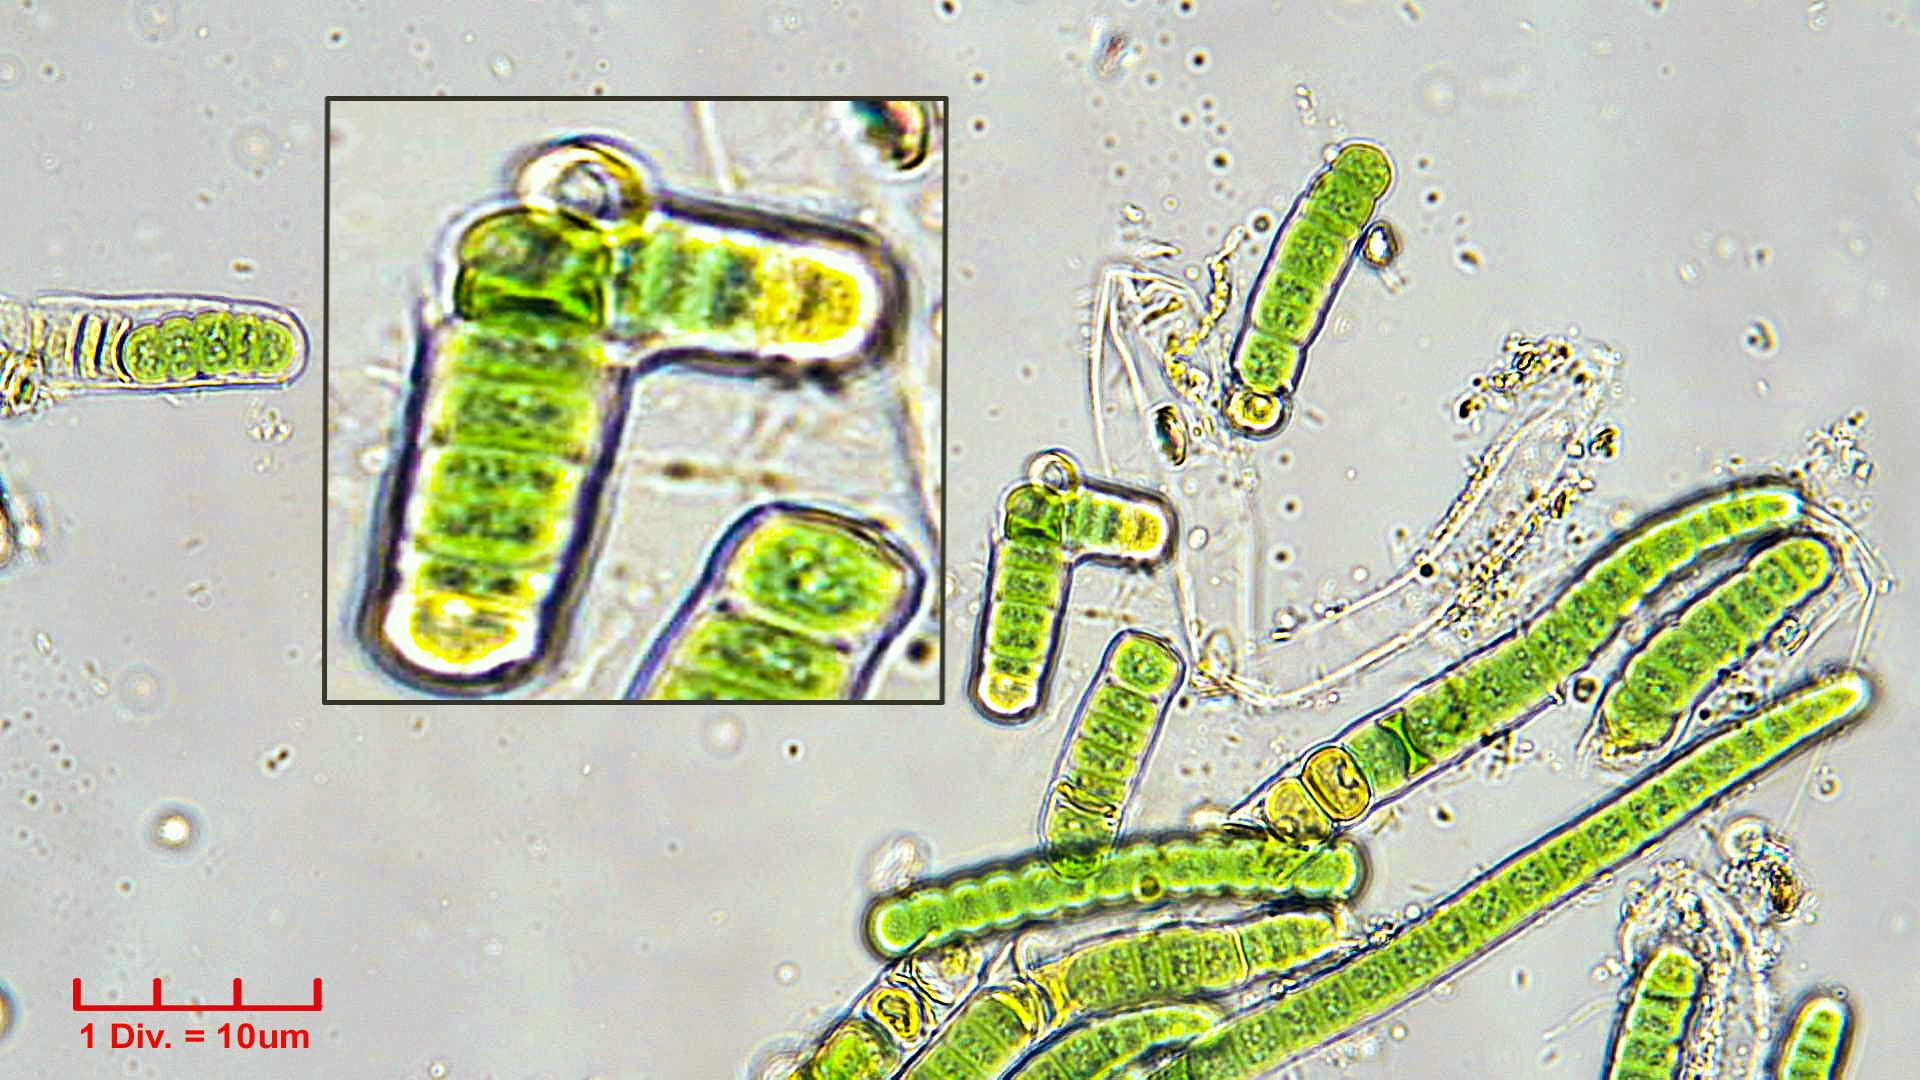 ././././Cyanobacteria/Nostocales/Tolypothrichaceae/Rexia/erecta/rexia-erecta-340.png